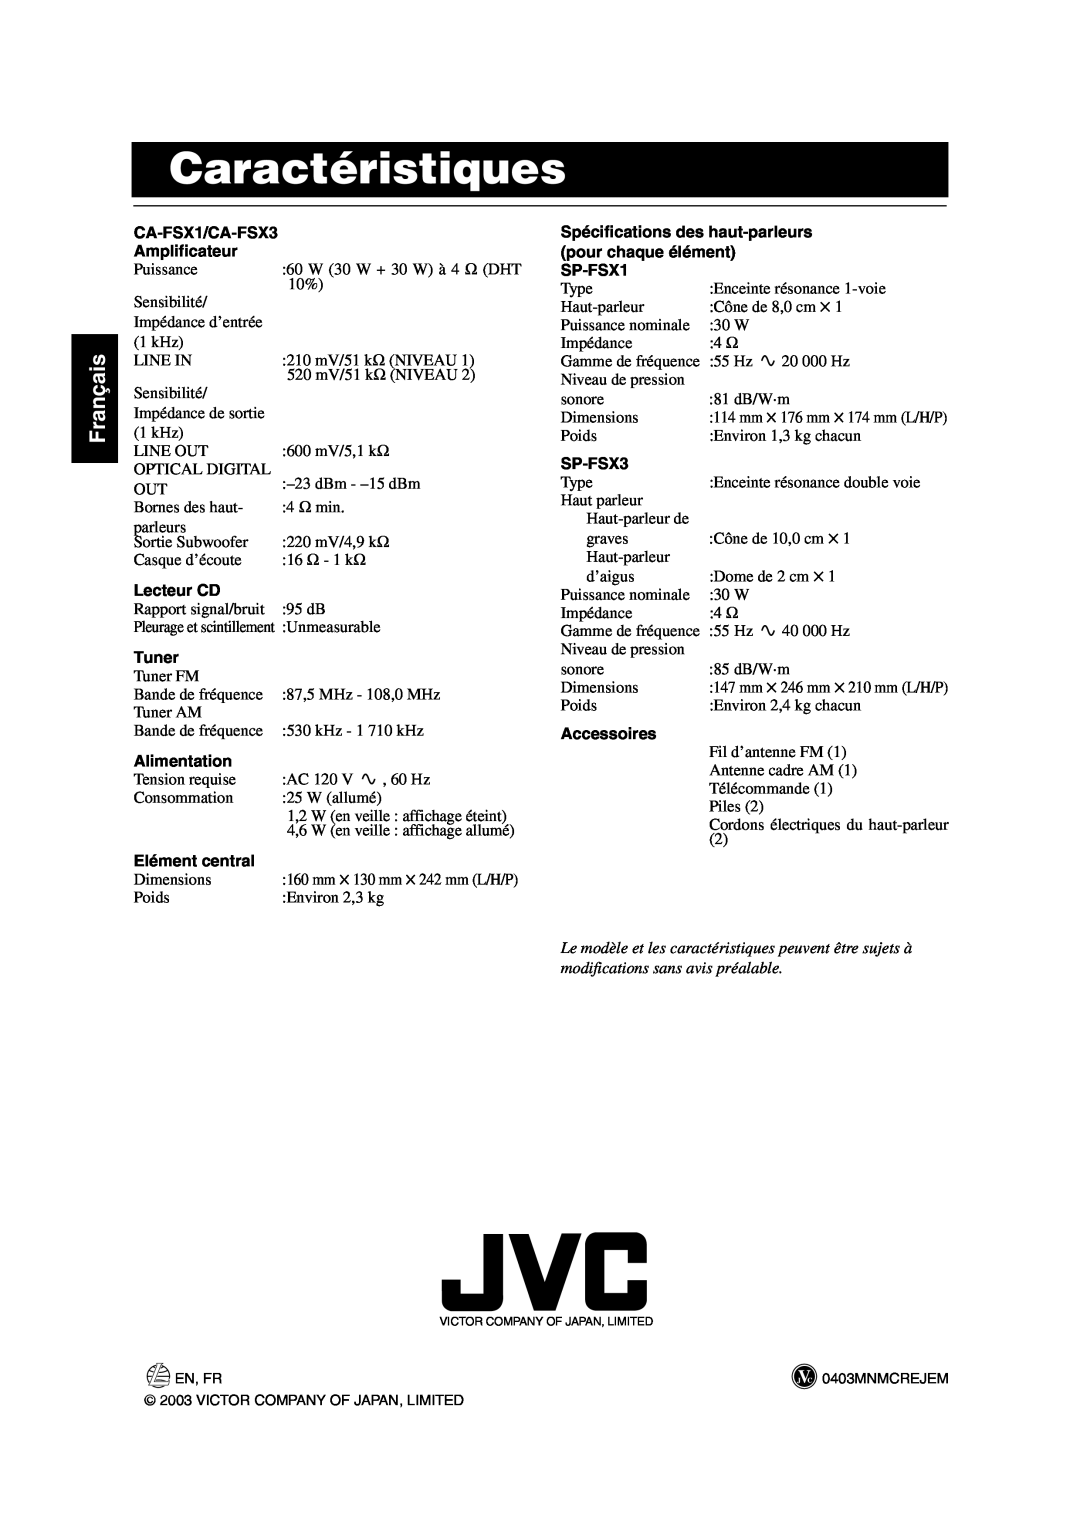 JVC FS-X1/FS-X3 manual Caractéristiques, Français, CA-FSX1/CA-FSX3, Amplificateur, Lecteur CD, Tuner, Alimentation, SP-FSX1 